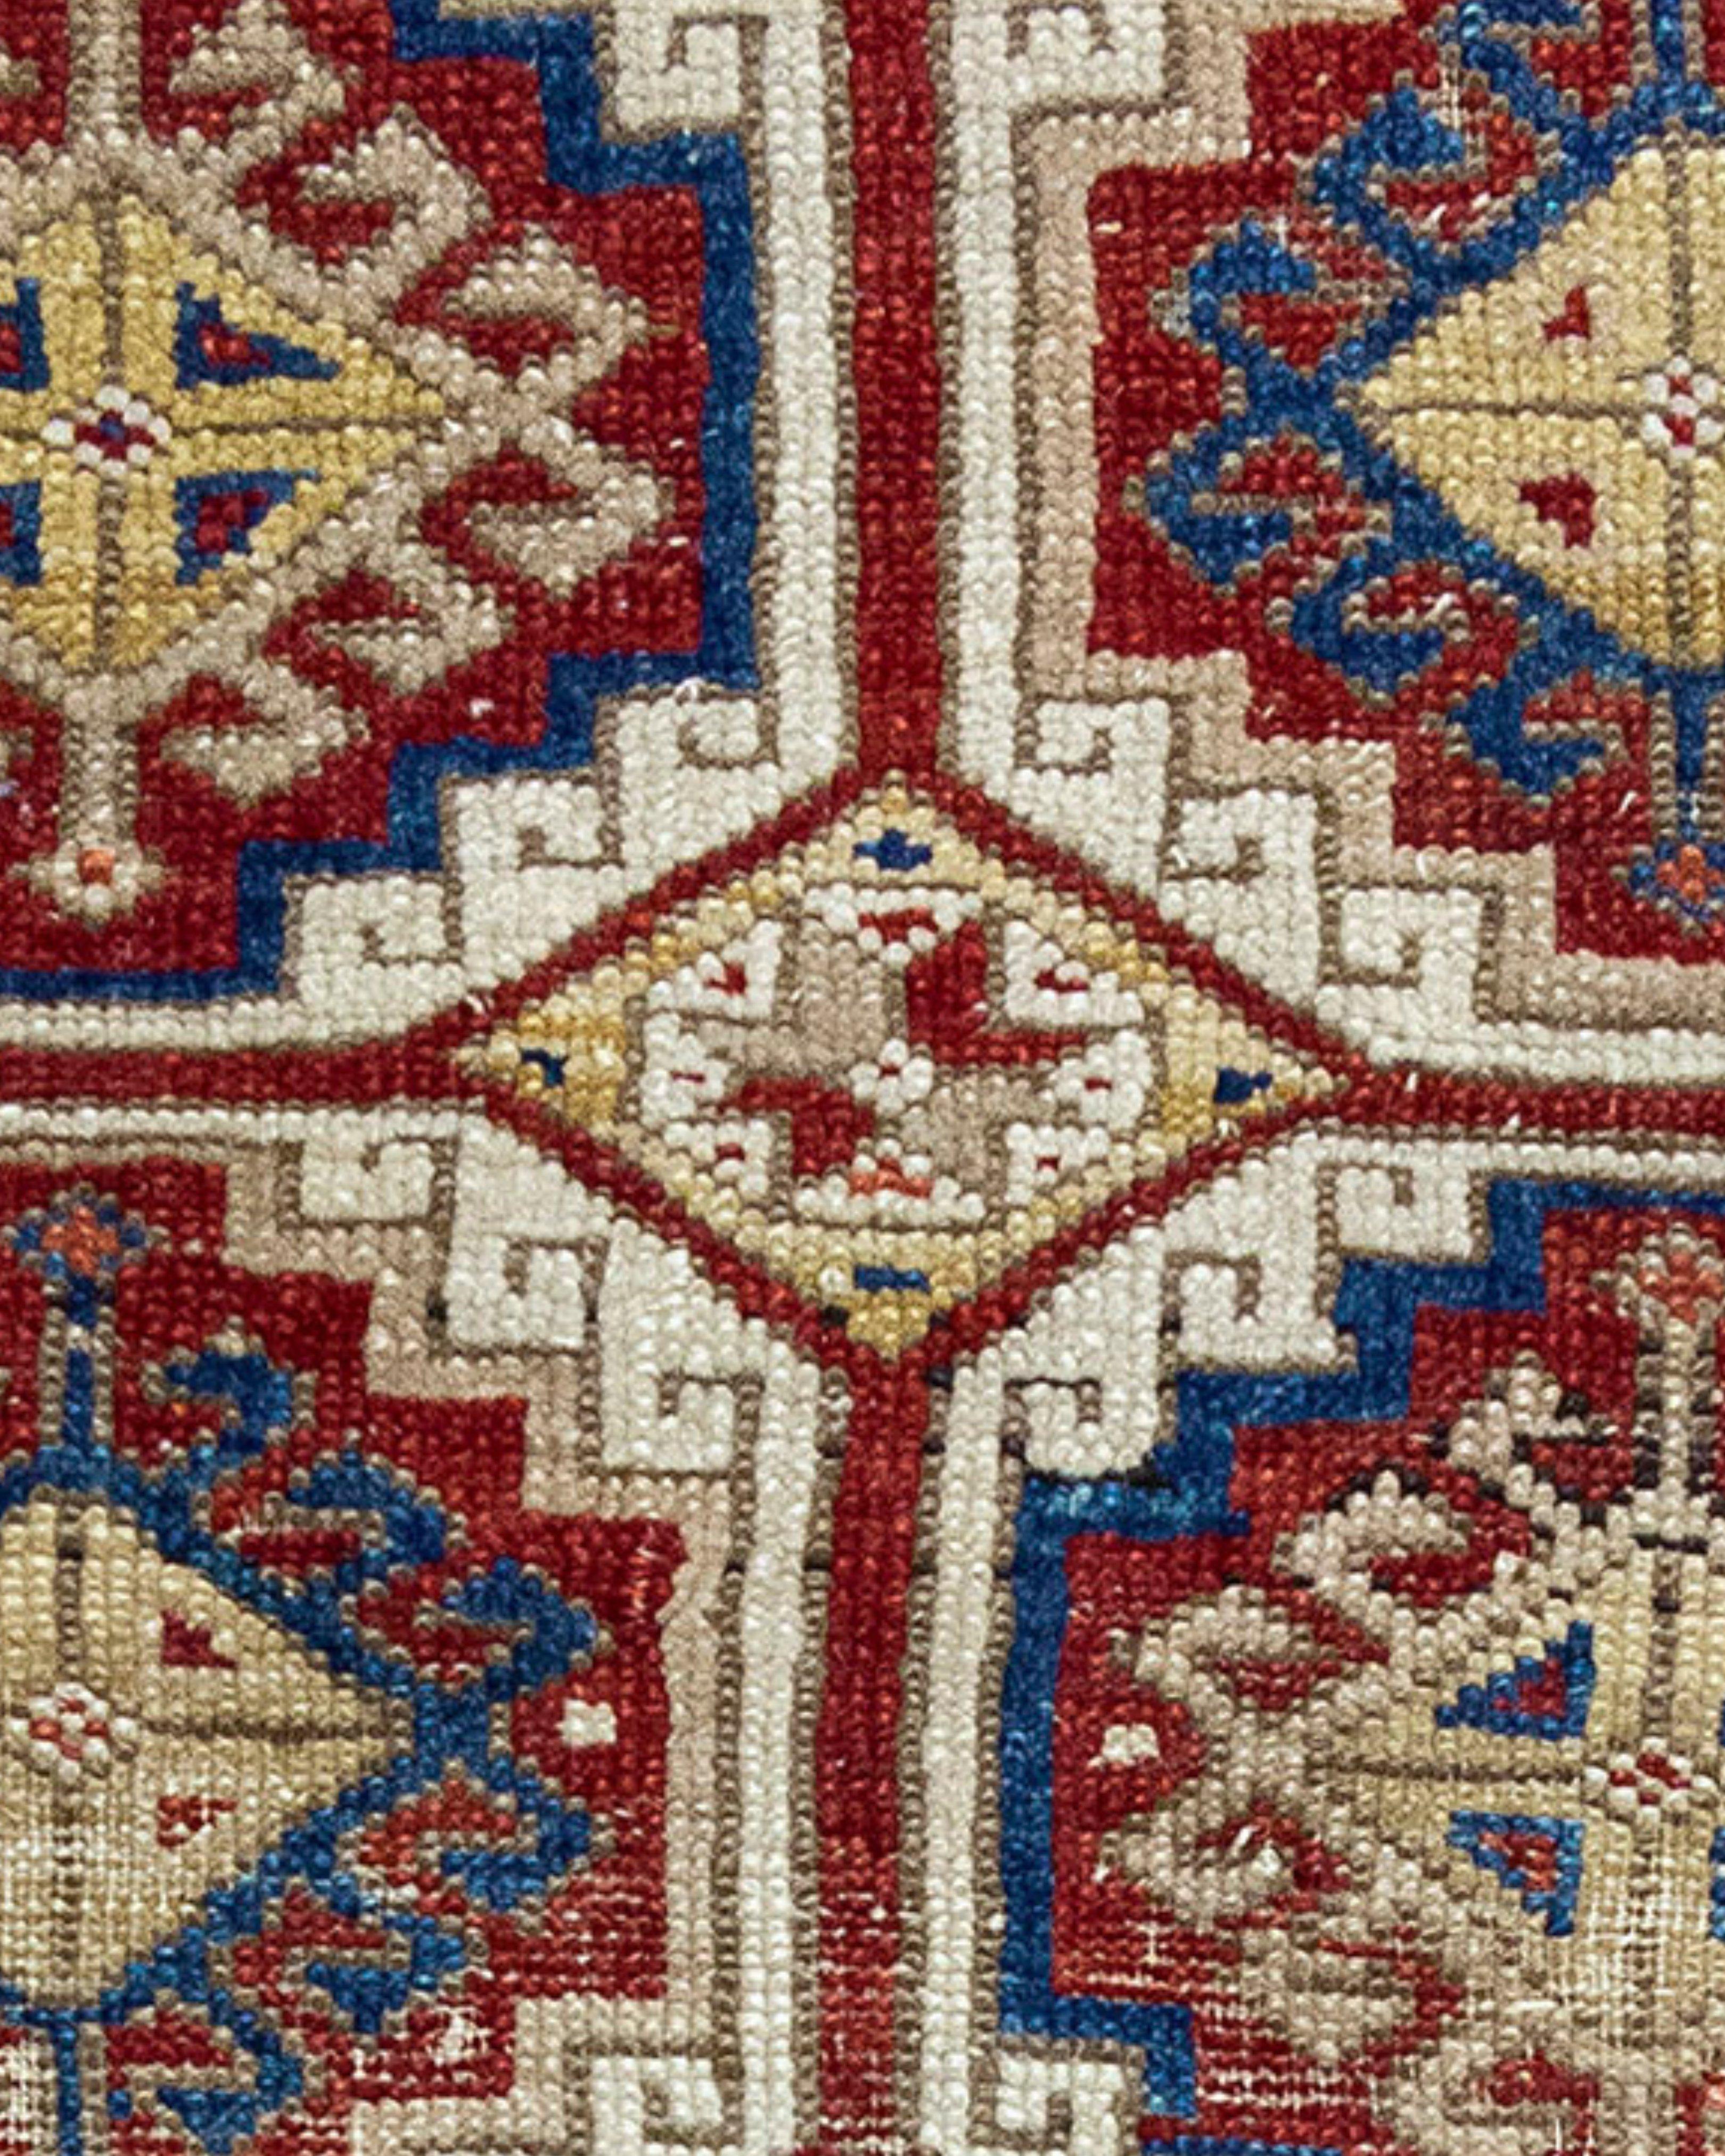 Ancien tapis turc Konya Yastik, milieu du 19e siècle

Informations supplémentaires :
Dimensions : 2'2